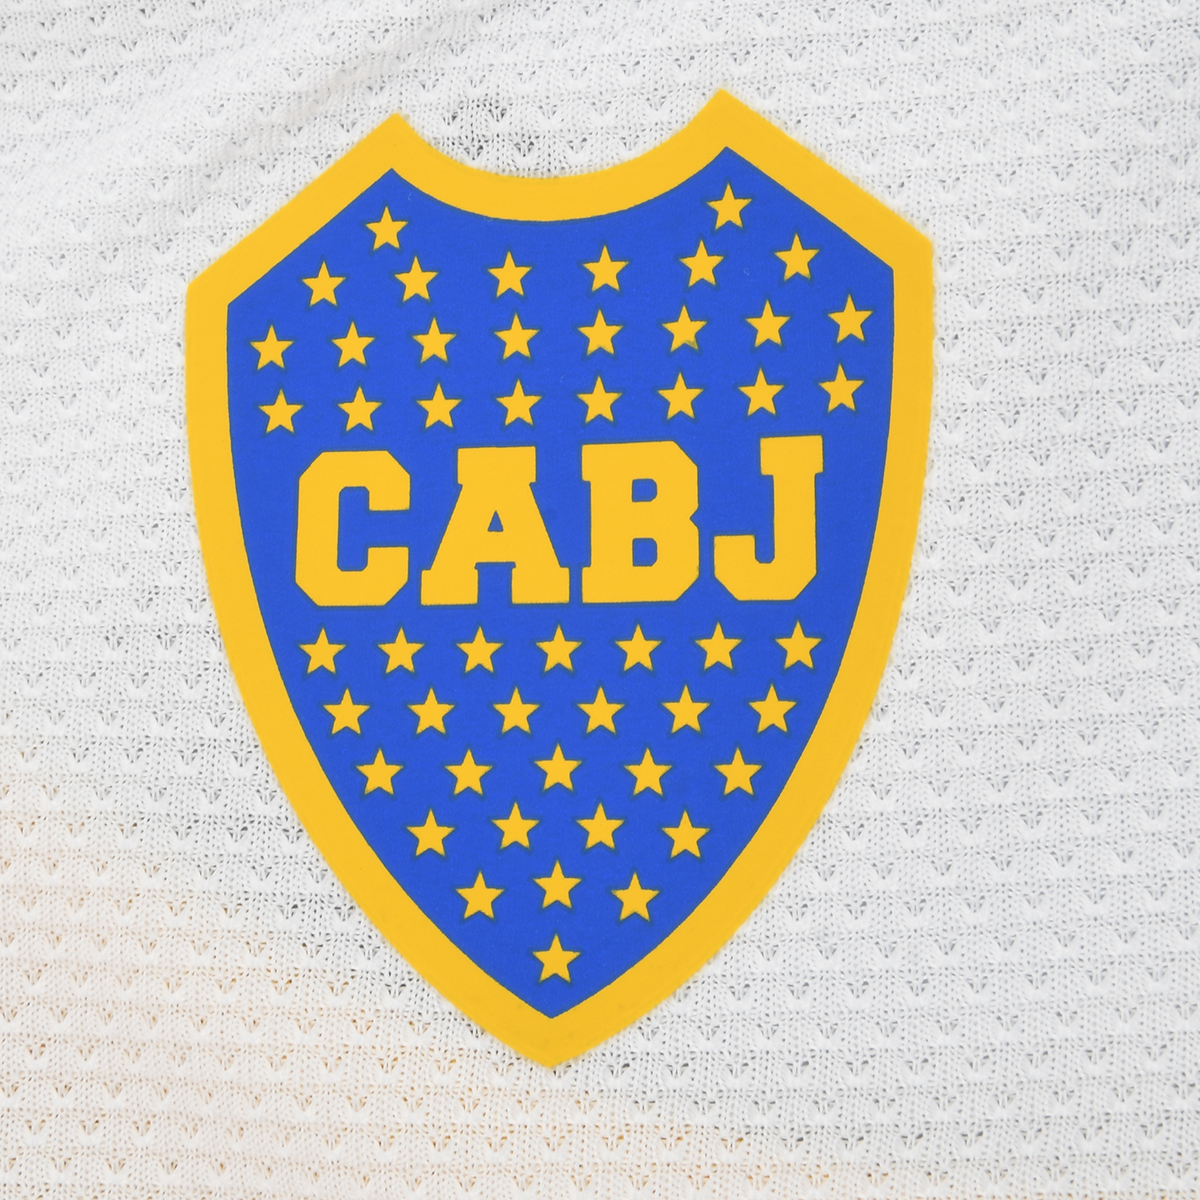 Camiseta Boca Juniors adidas alternativa 2022/2023 Mujer,  image number null